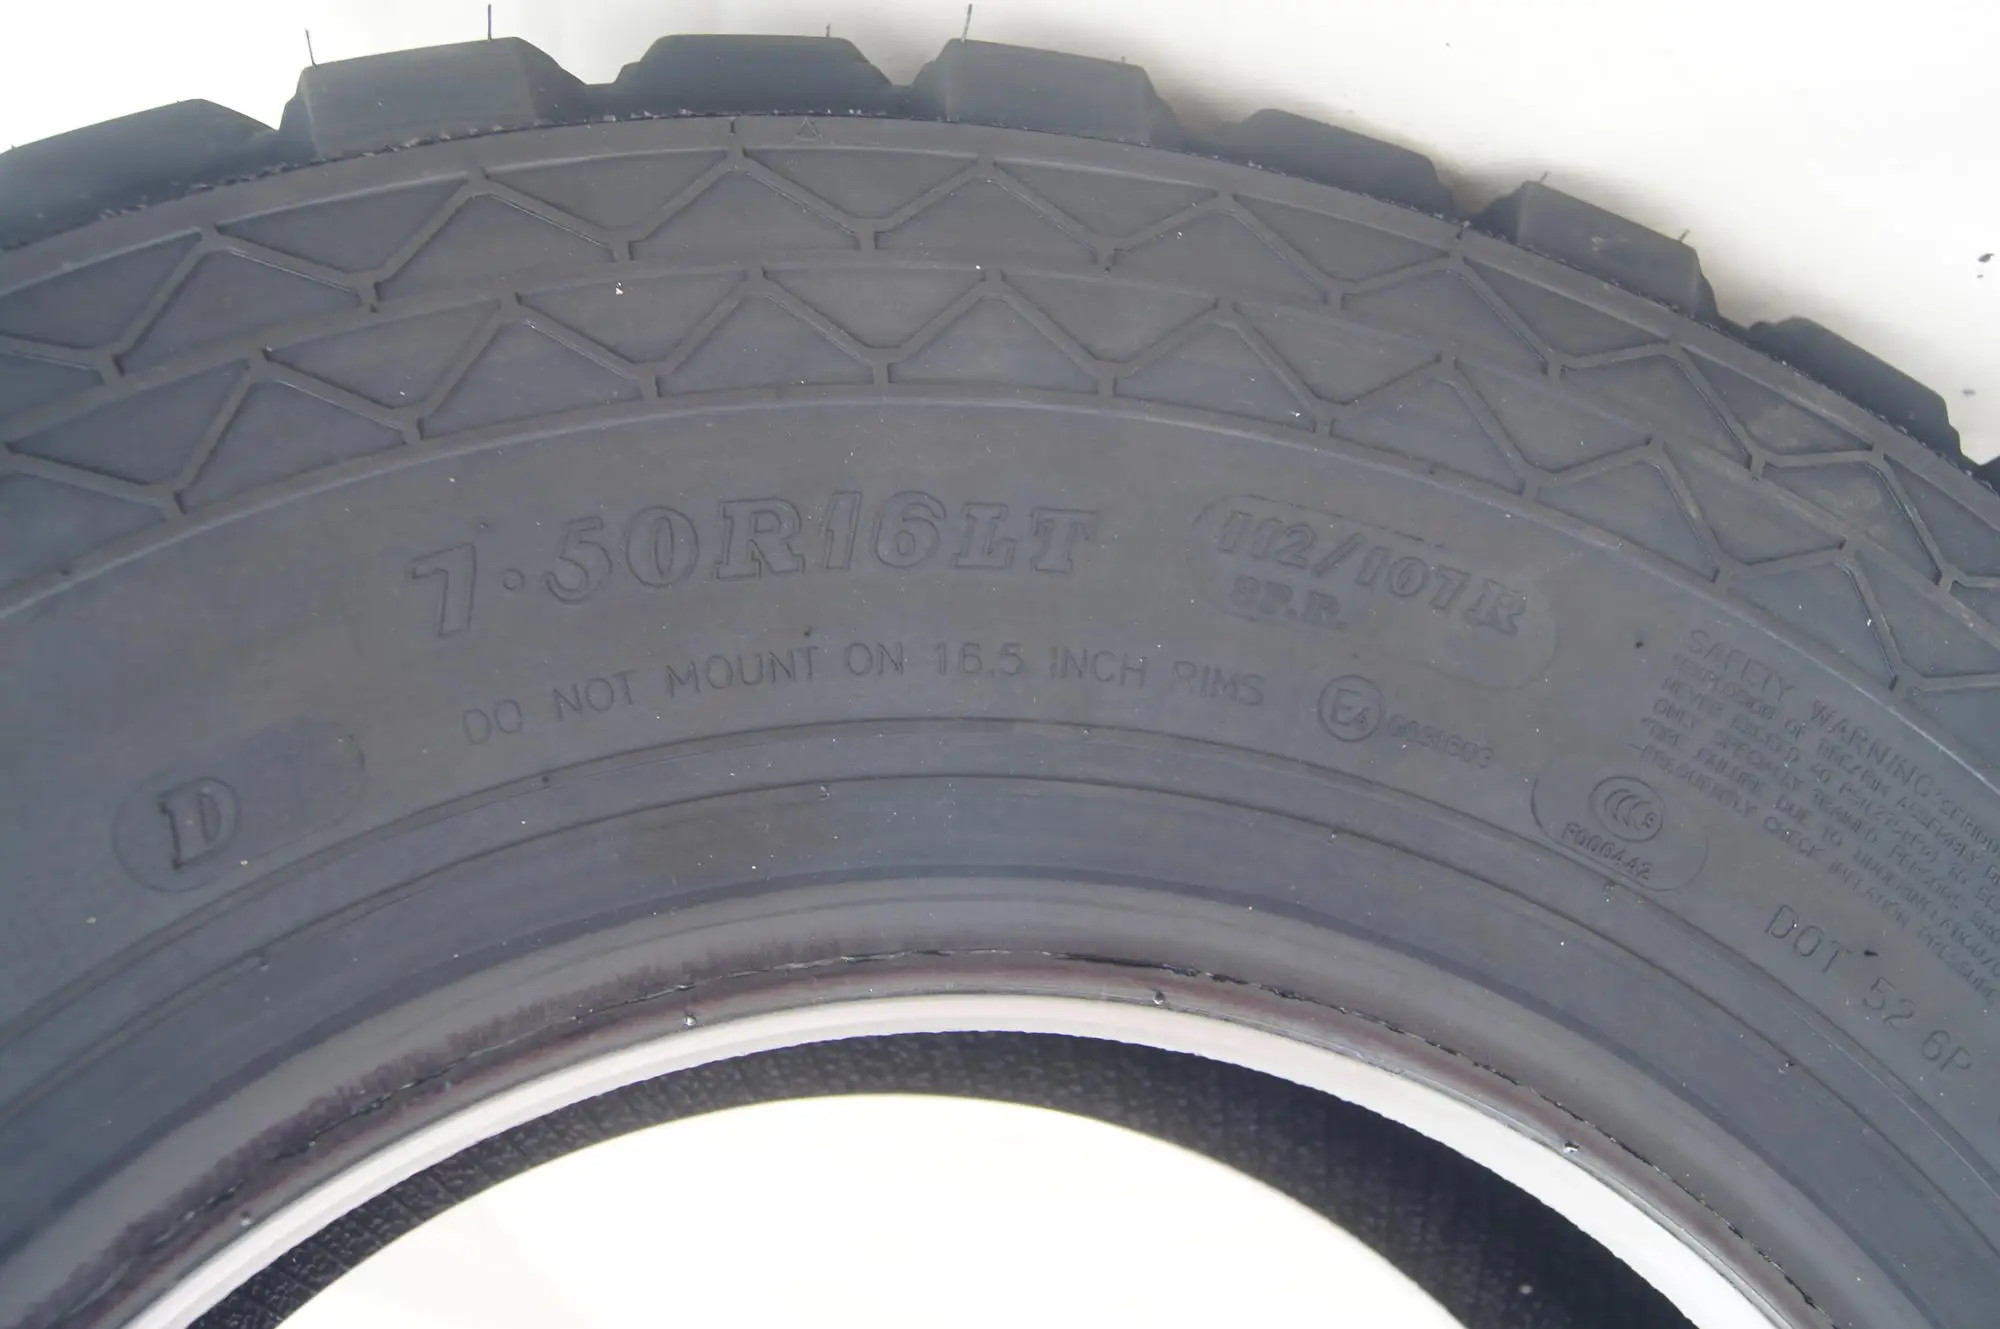 semi steel tubelss tire 7.50R16LT